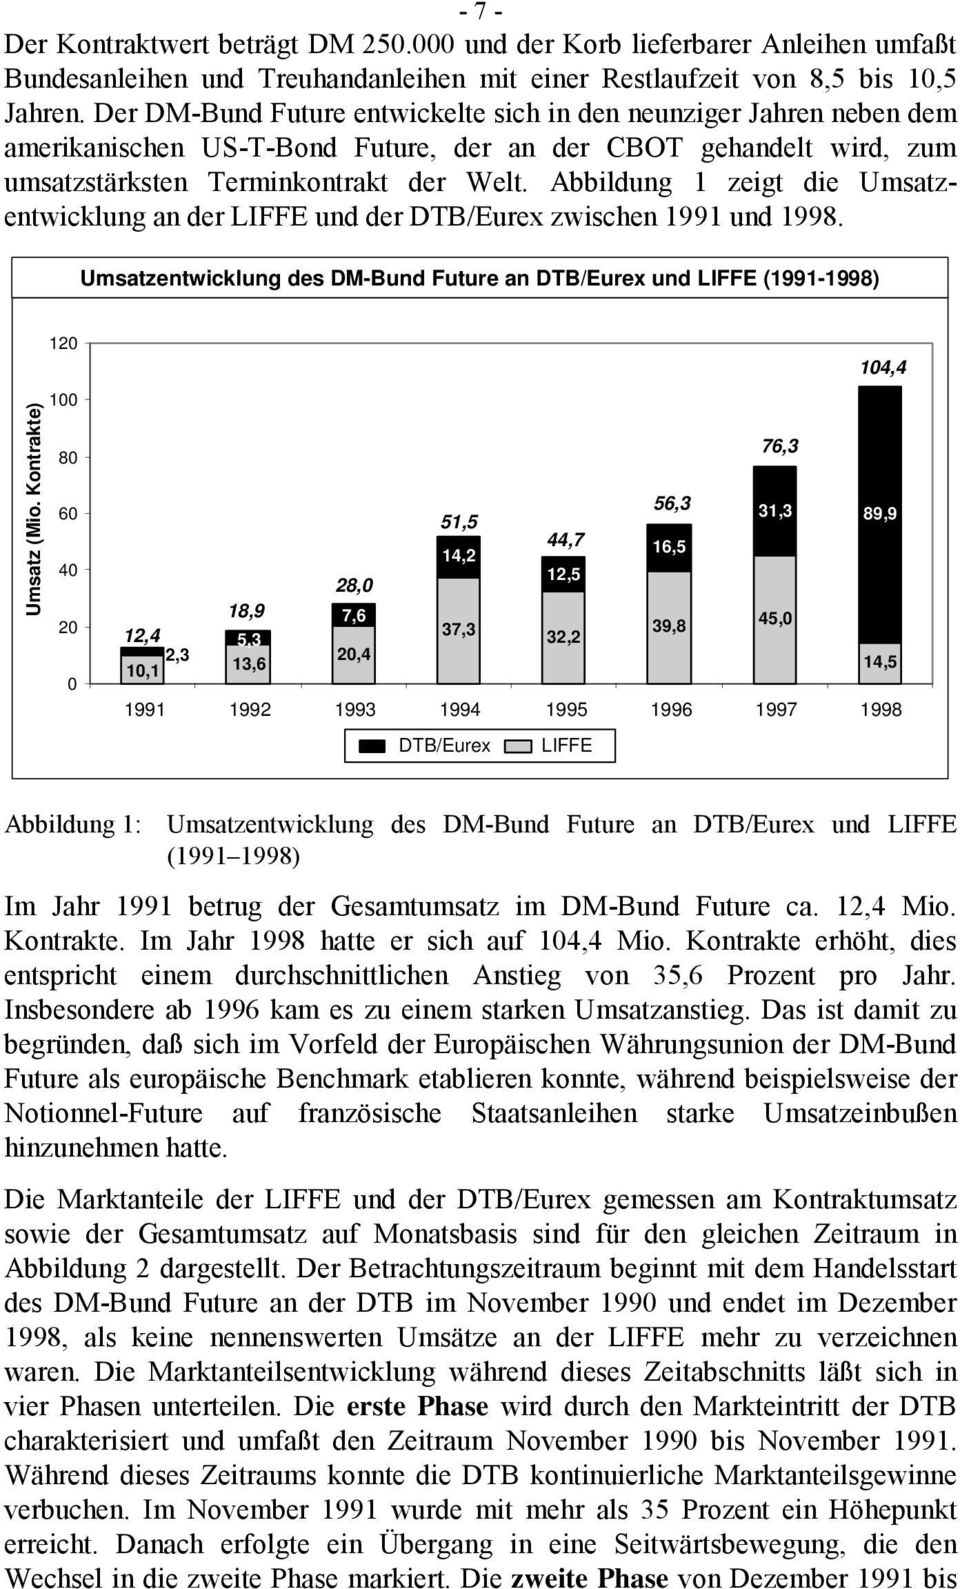 Abbildung 1 zeigt die Umsatzentwicklung an der LIFFE und der DTB/Eurex zwischen 1991 und 1998. Umsatzentwicklung des DM-Bund Future an DTB/Eurex und LIFFE (1991-1998) Umsatz (Mio.